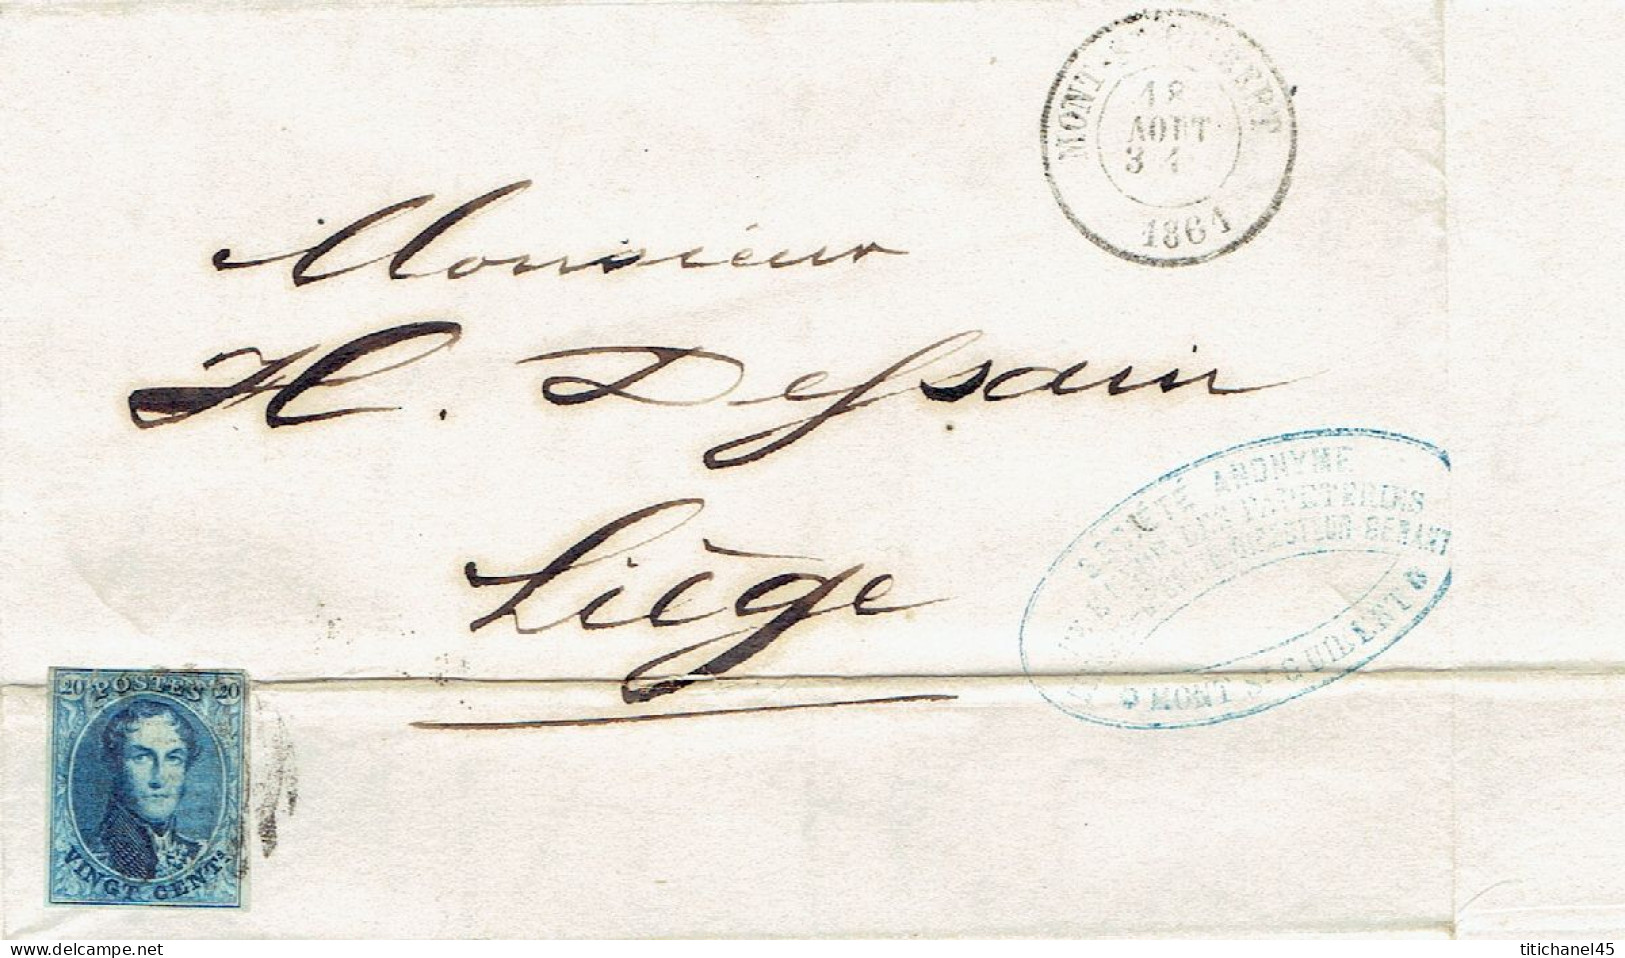 N°11 Margé S/LAC Obl.MONT ST-GUIBERT(01.1861)cachet Pr/entête UNION PAPETERIES DEMEURS-DECORTE LA HULPE CHAUMONT-LIMAL - 1858-1862 Medaillons (9/12)